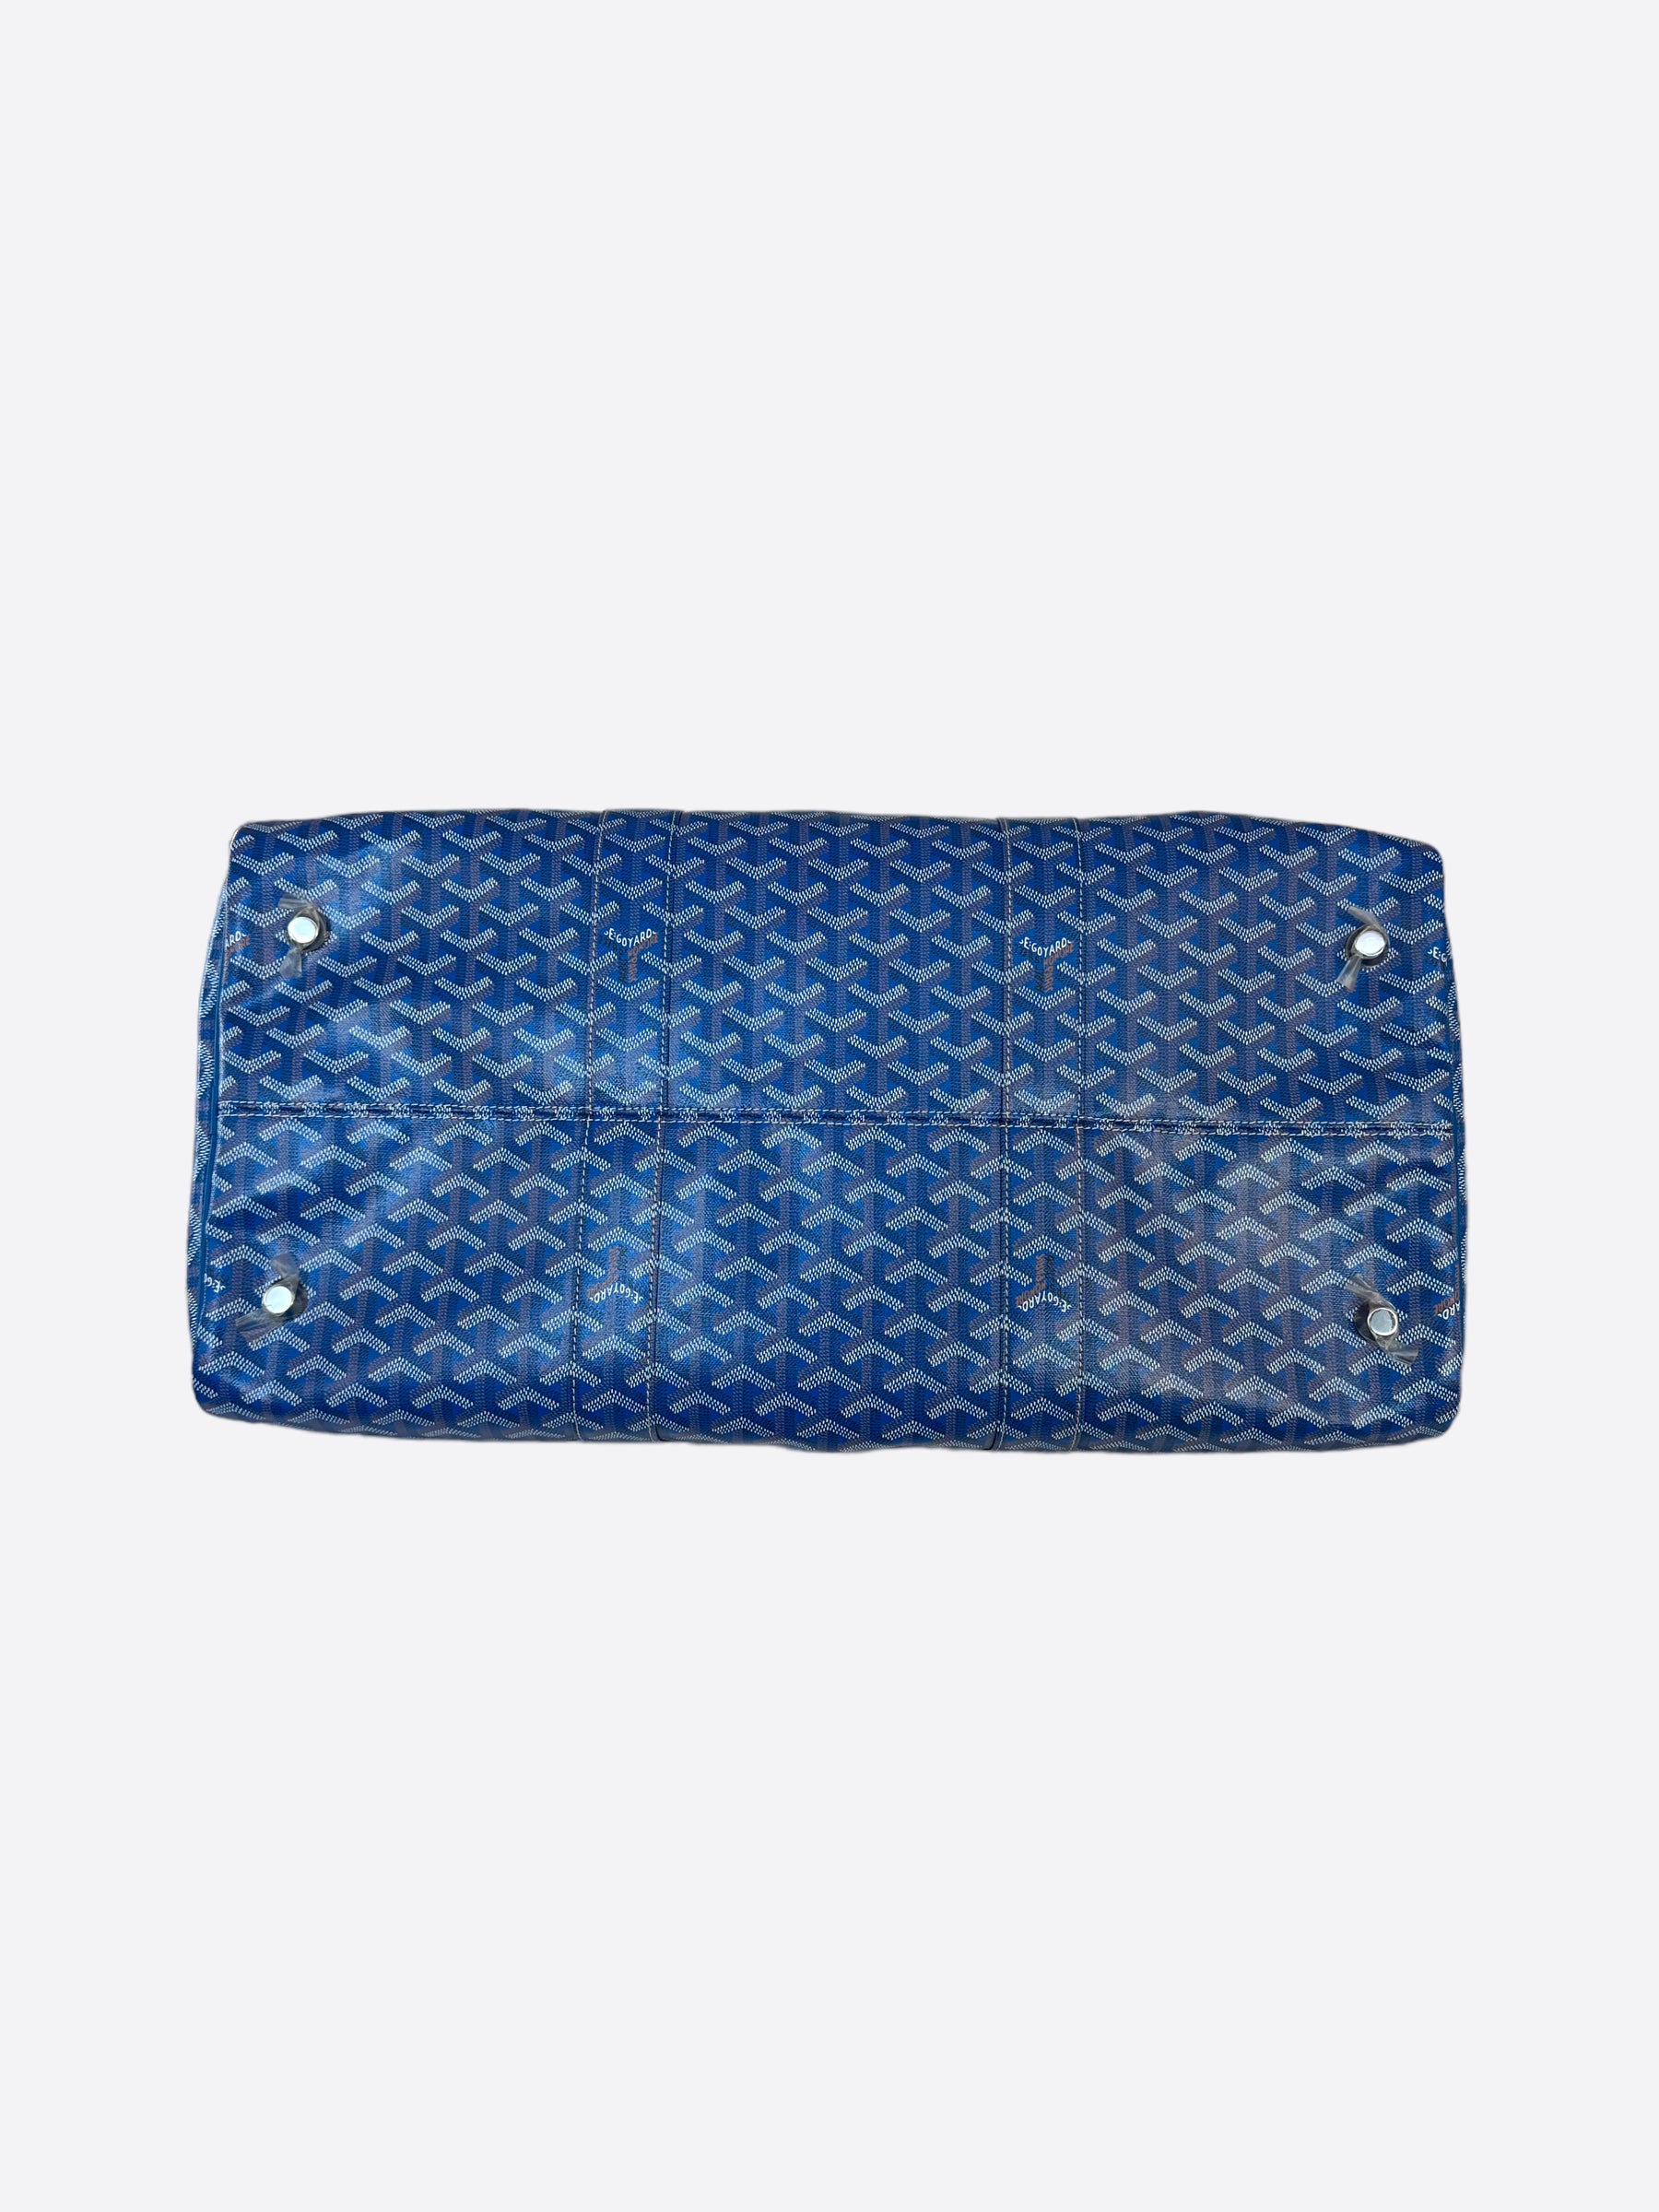 Goyard Blue Goyardine Boston 50 Duffle Bag – Savonches